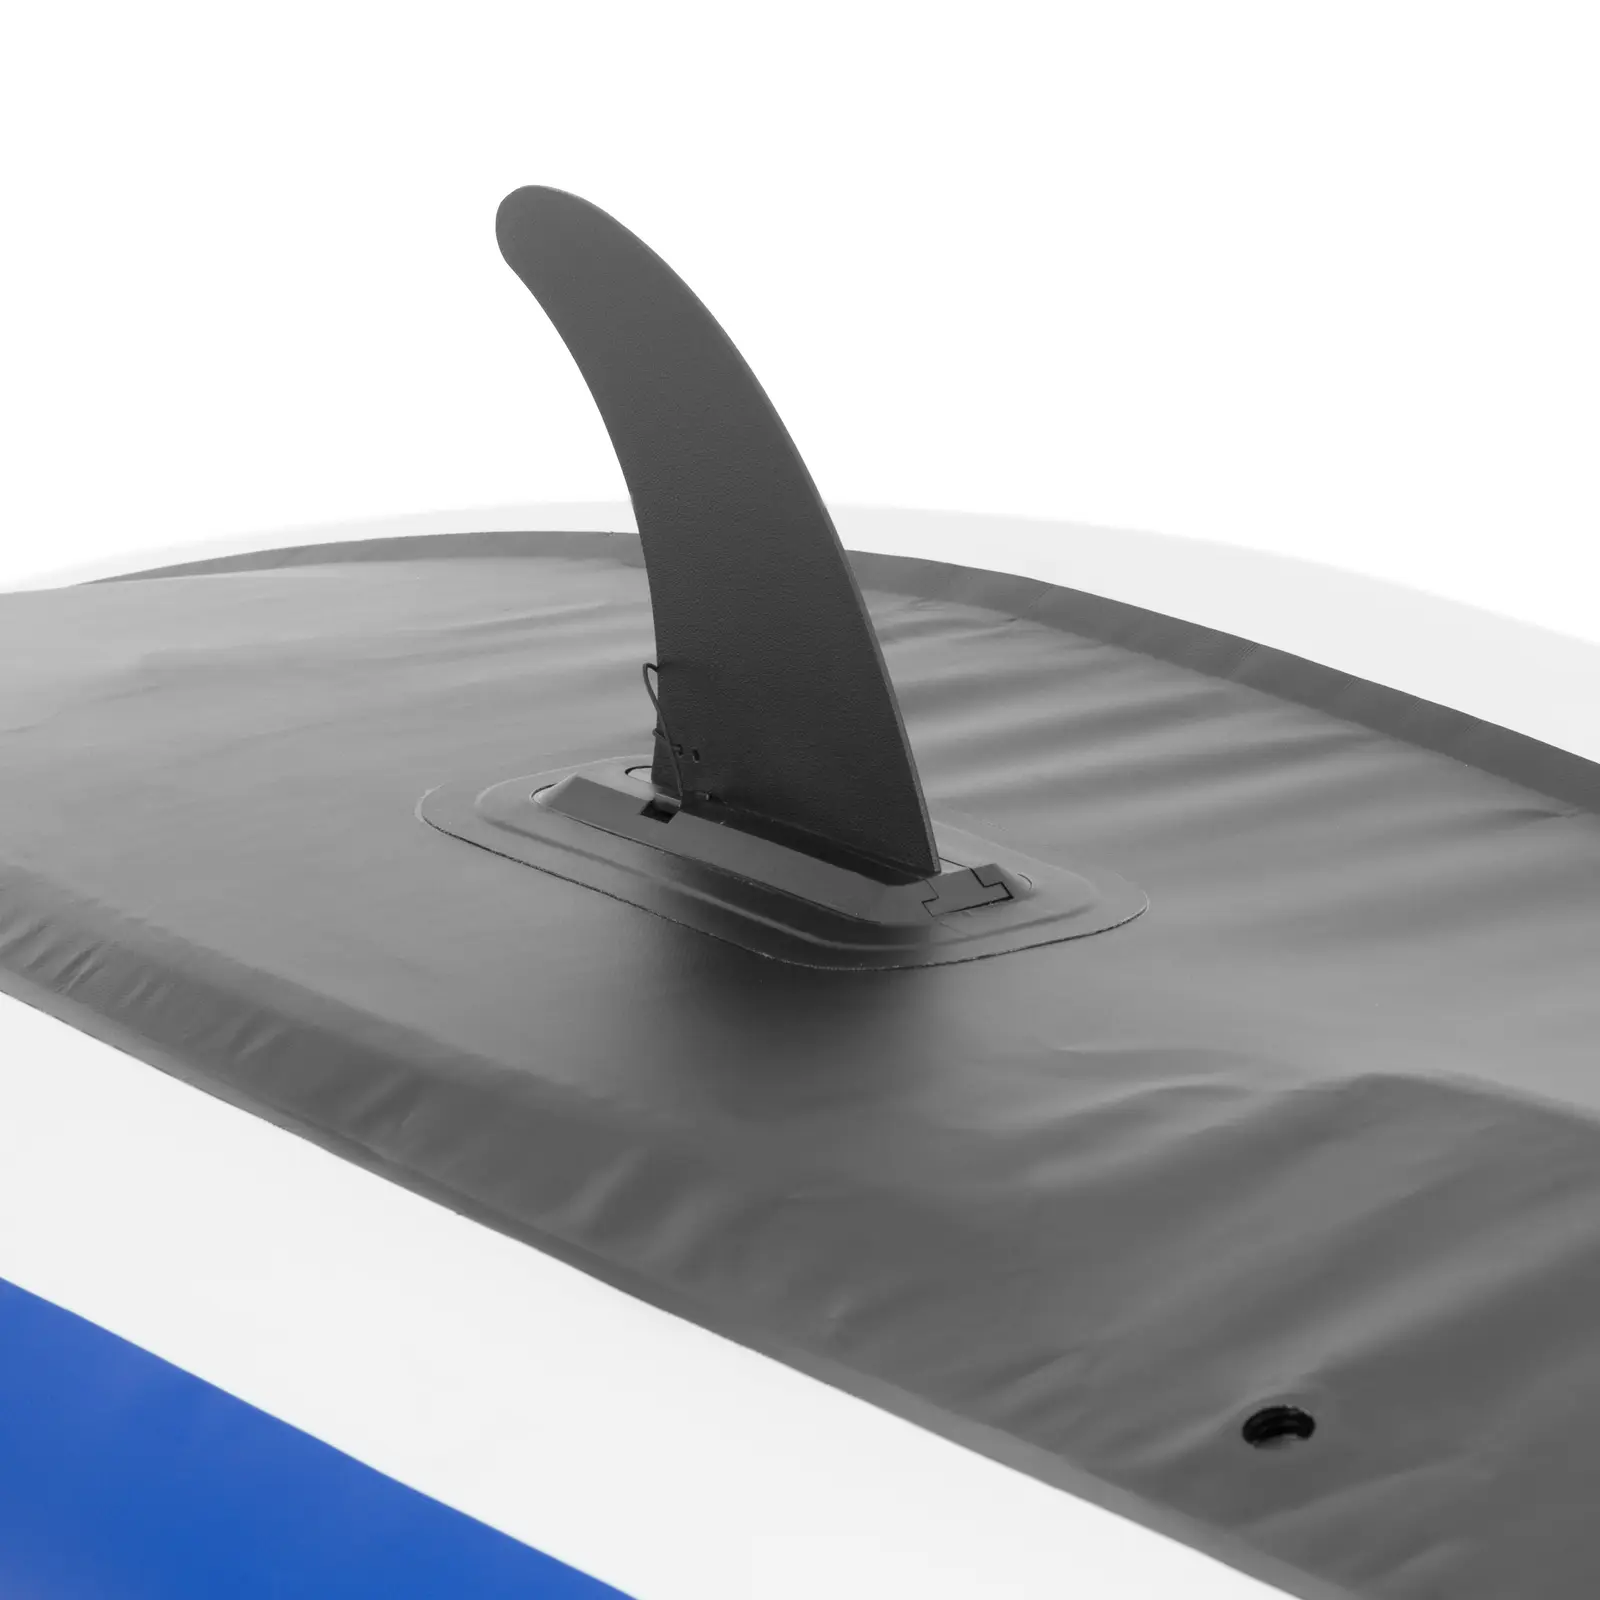 Kayak gonflable - monoplace - set complet avec pagaie, siège et accessoires 